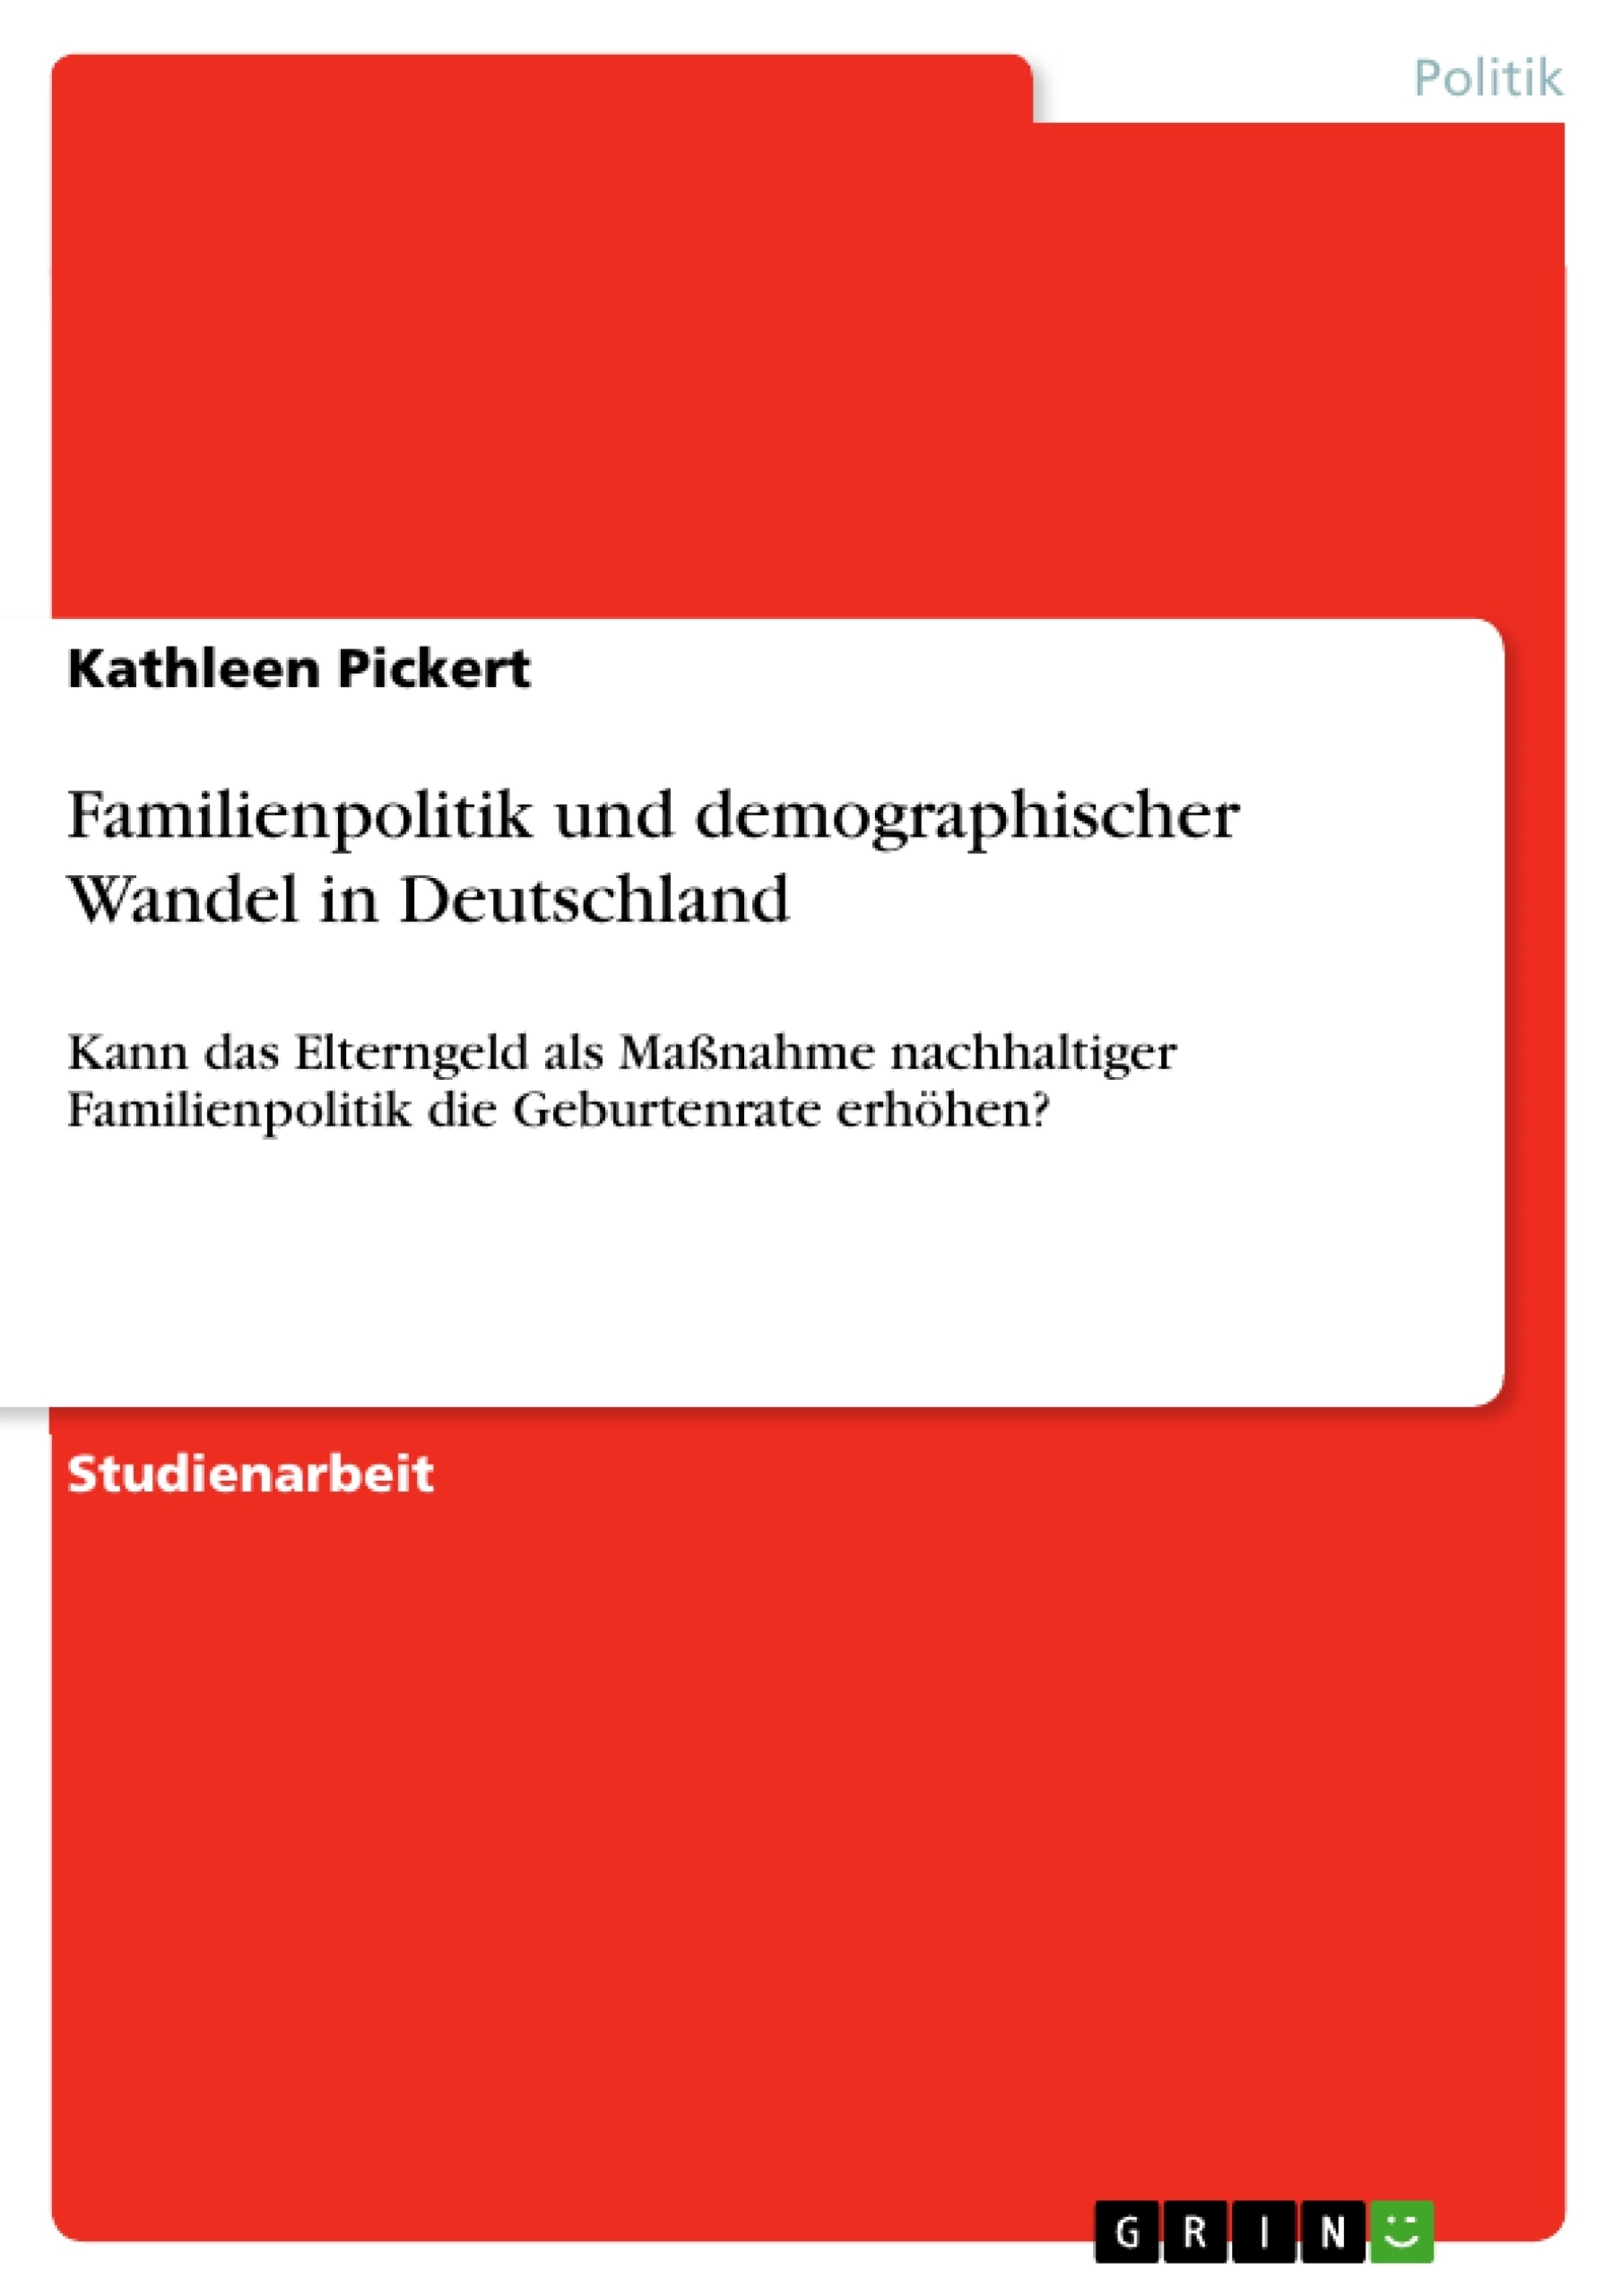 Title: Familienpolitik und demographischer Wandel in Deutschland